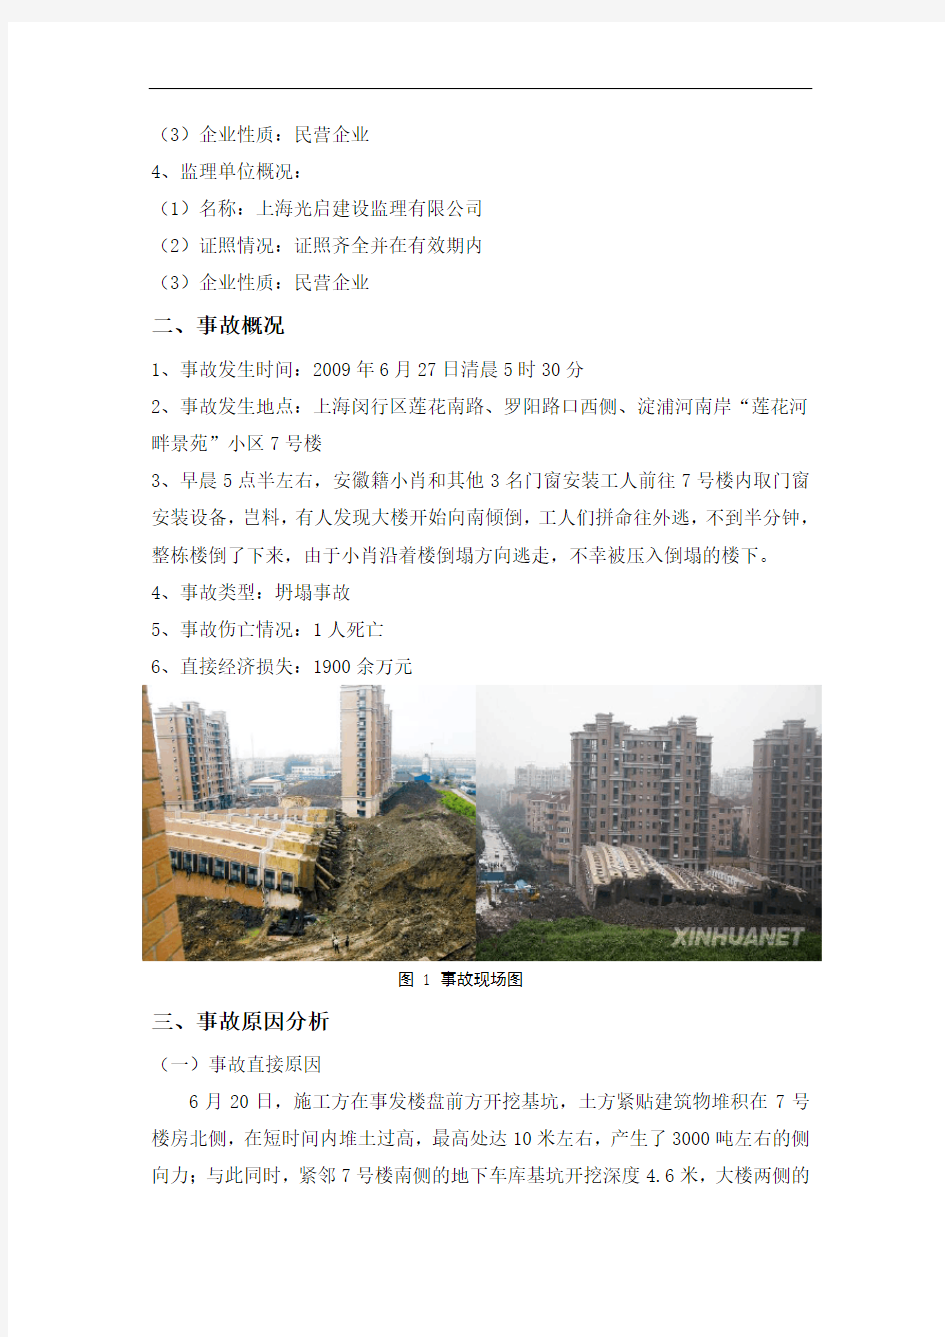 上海“莲花河畔景苑”倒楼事故调查报告